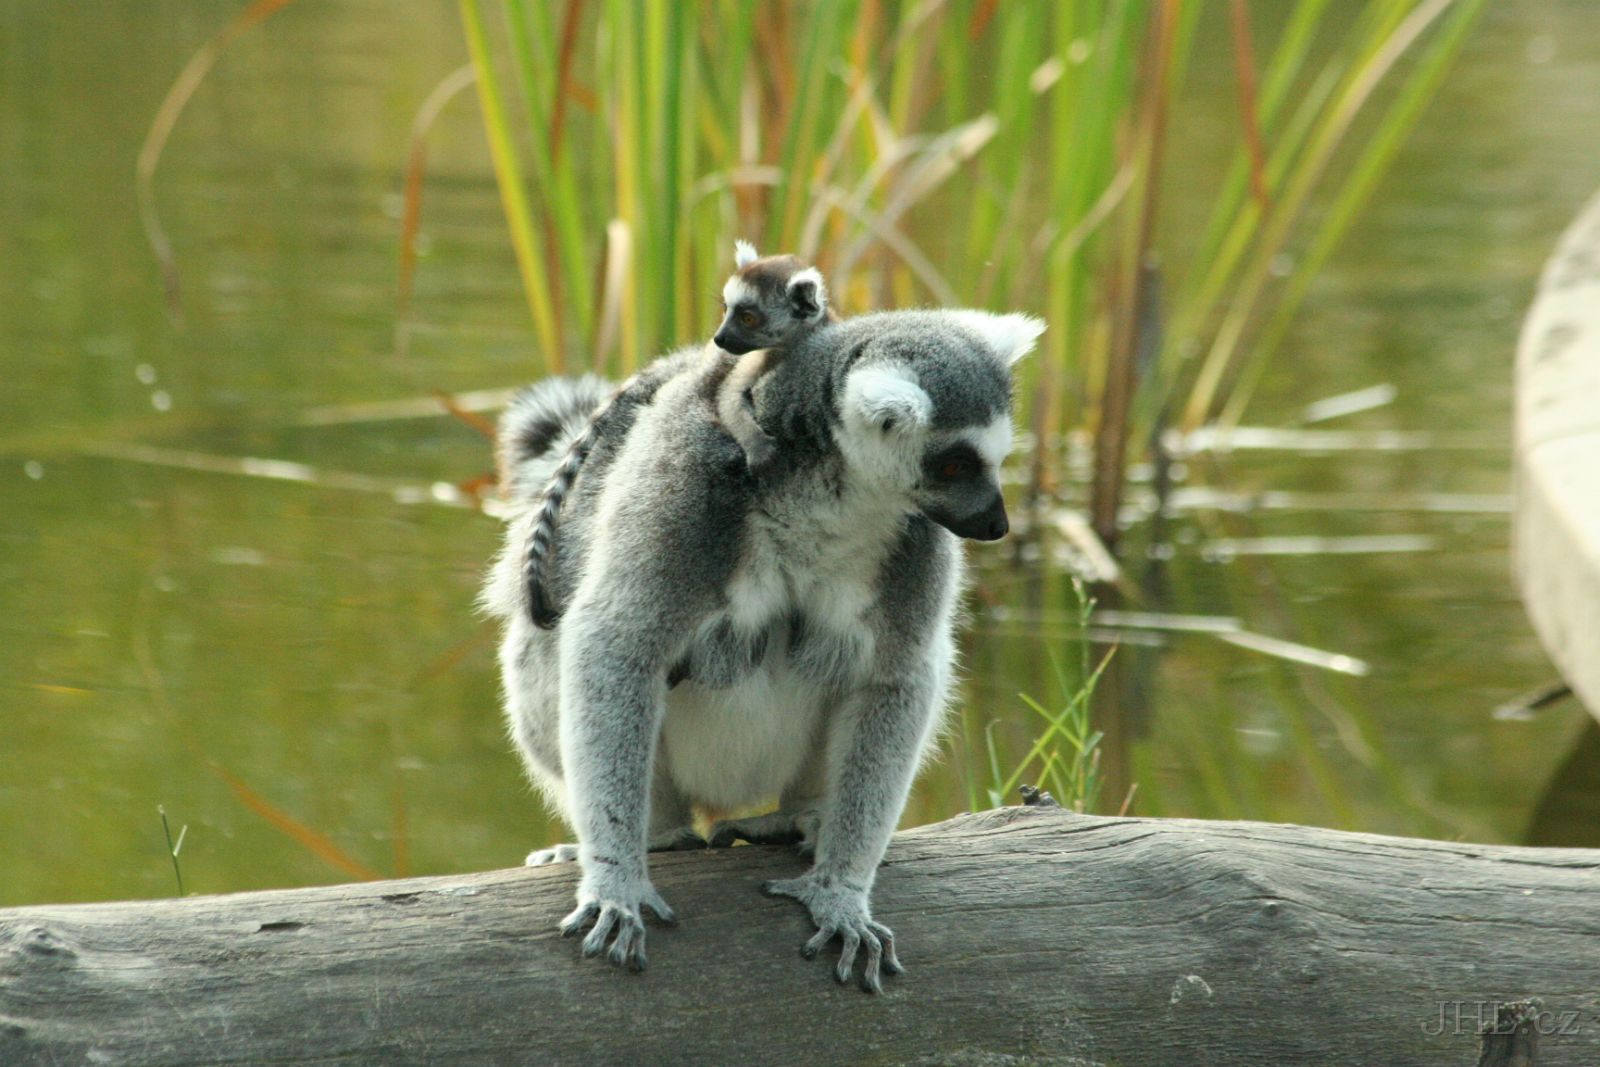 060917c865.JPG - Lemur Kata (Lemur catta)